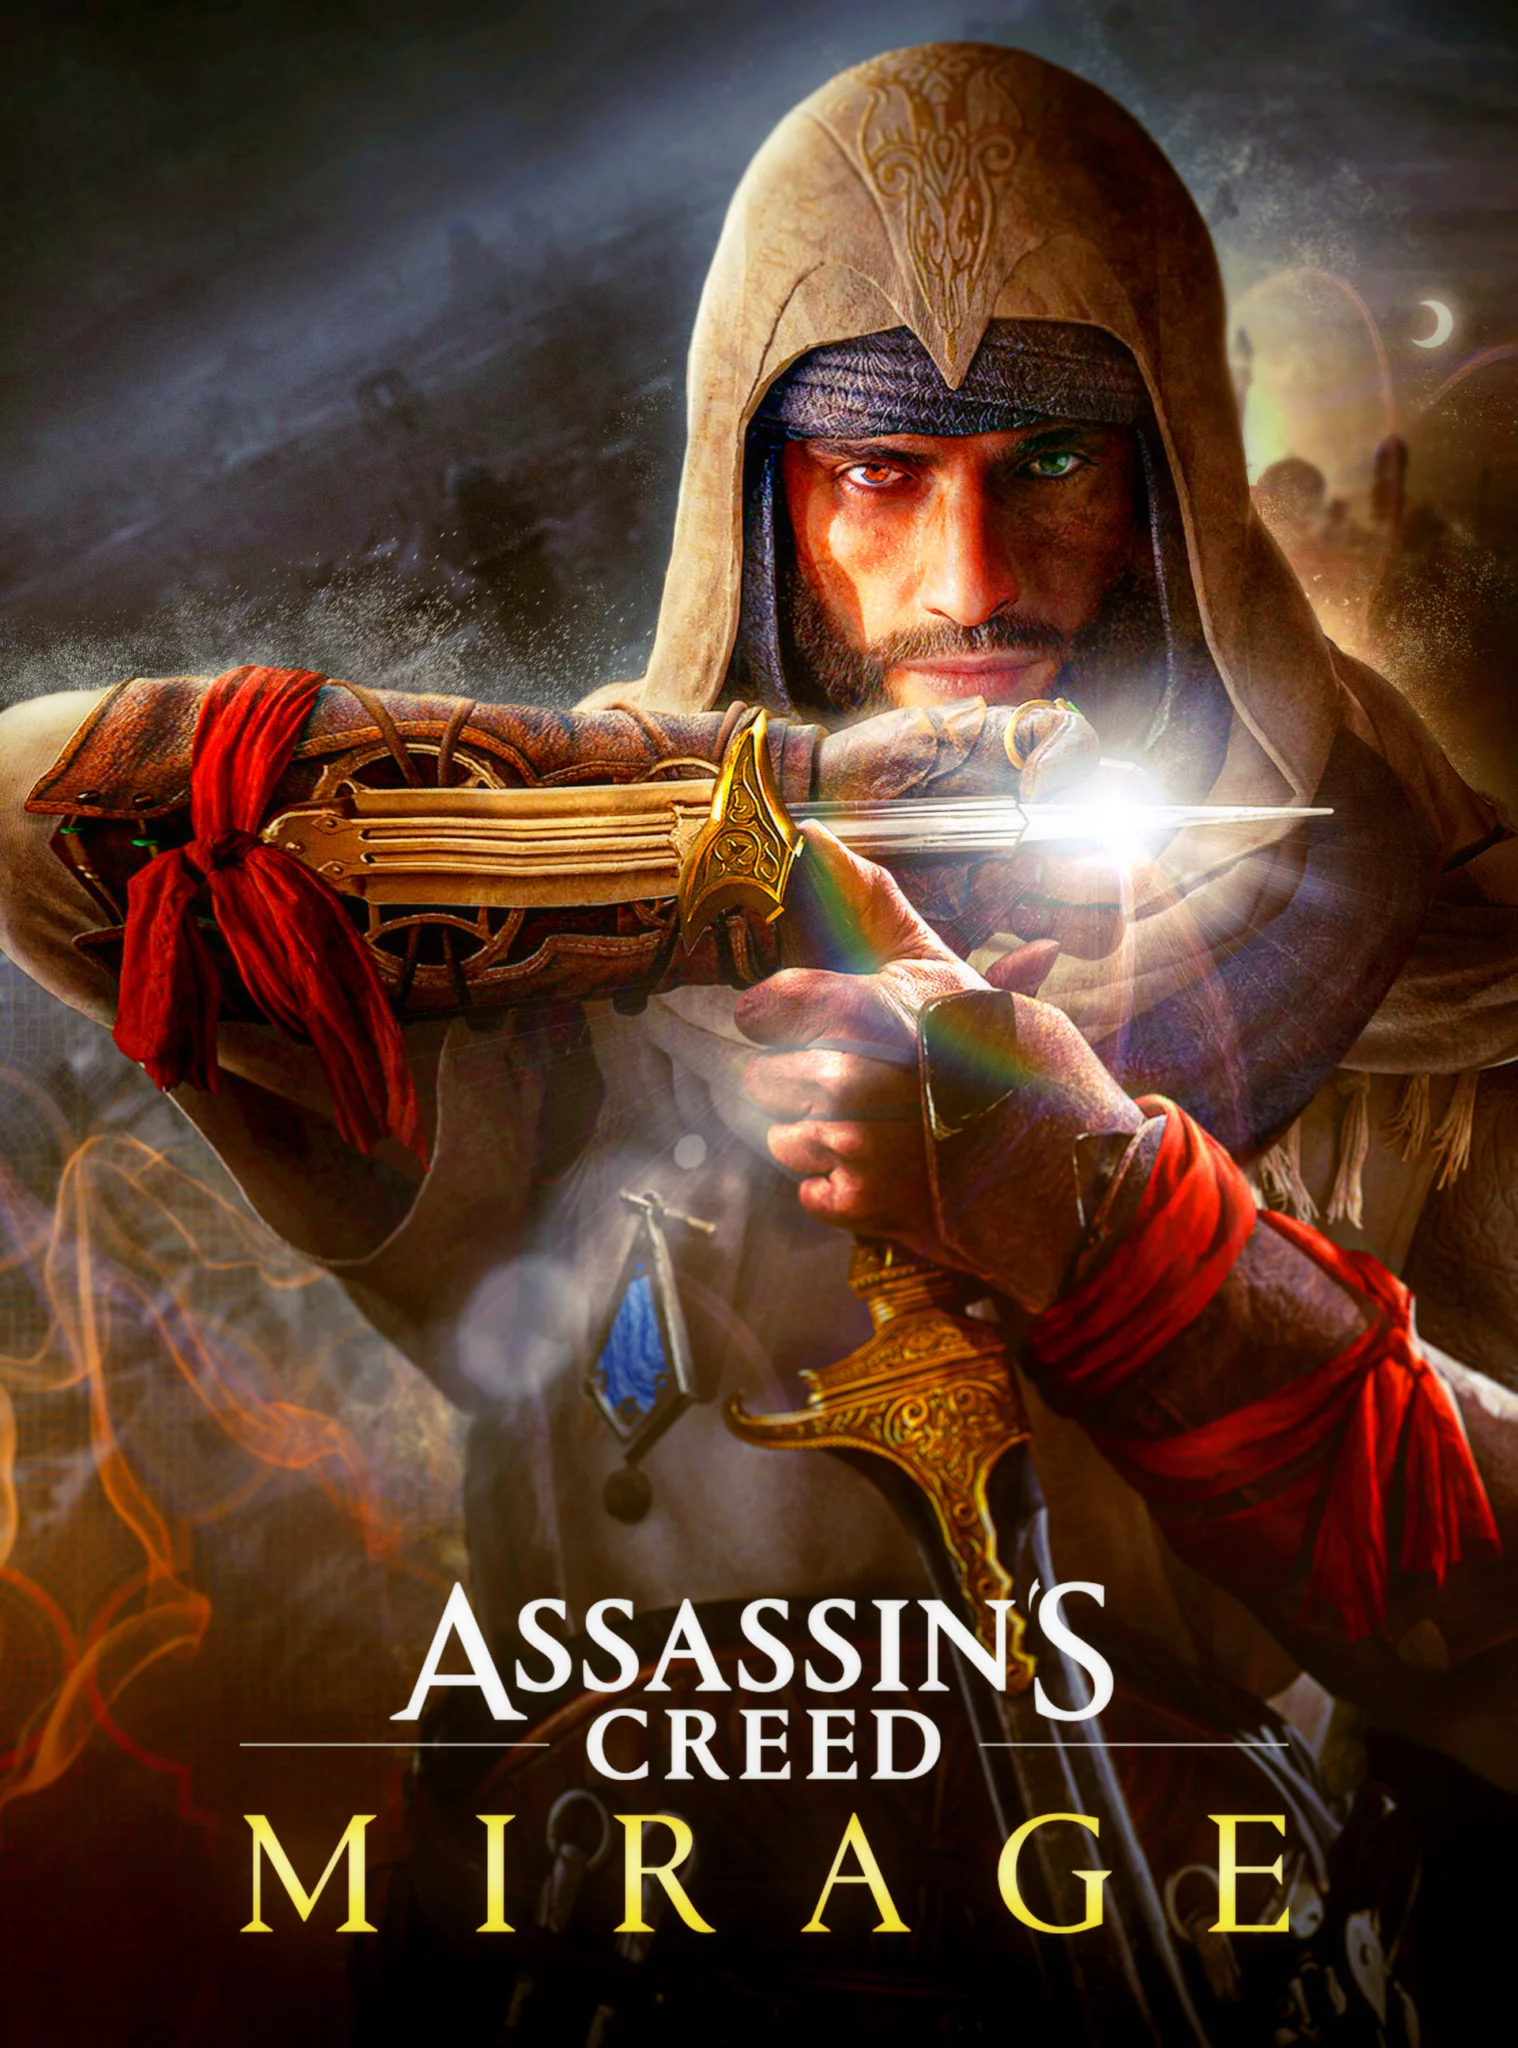 COMO MUDAR ÁUDIO E LEGENDA - Assassin's Creed Brasil #acbr